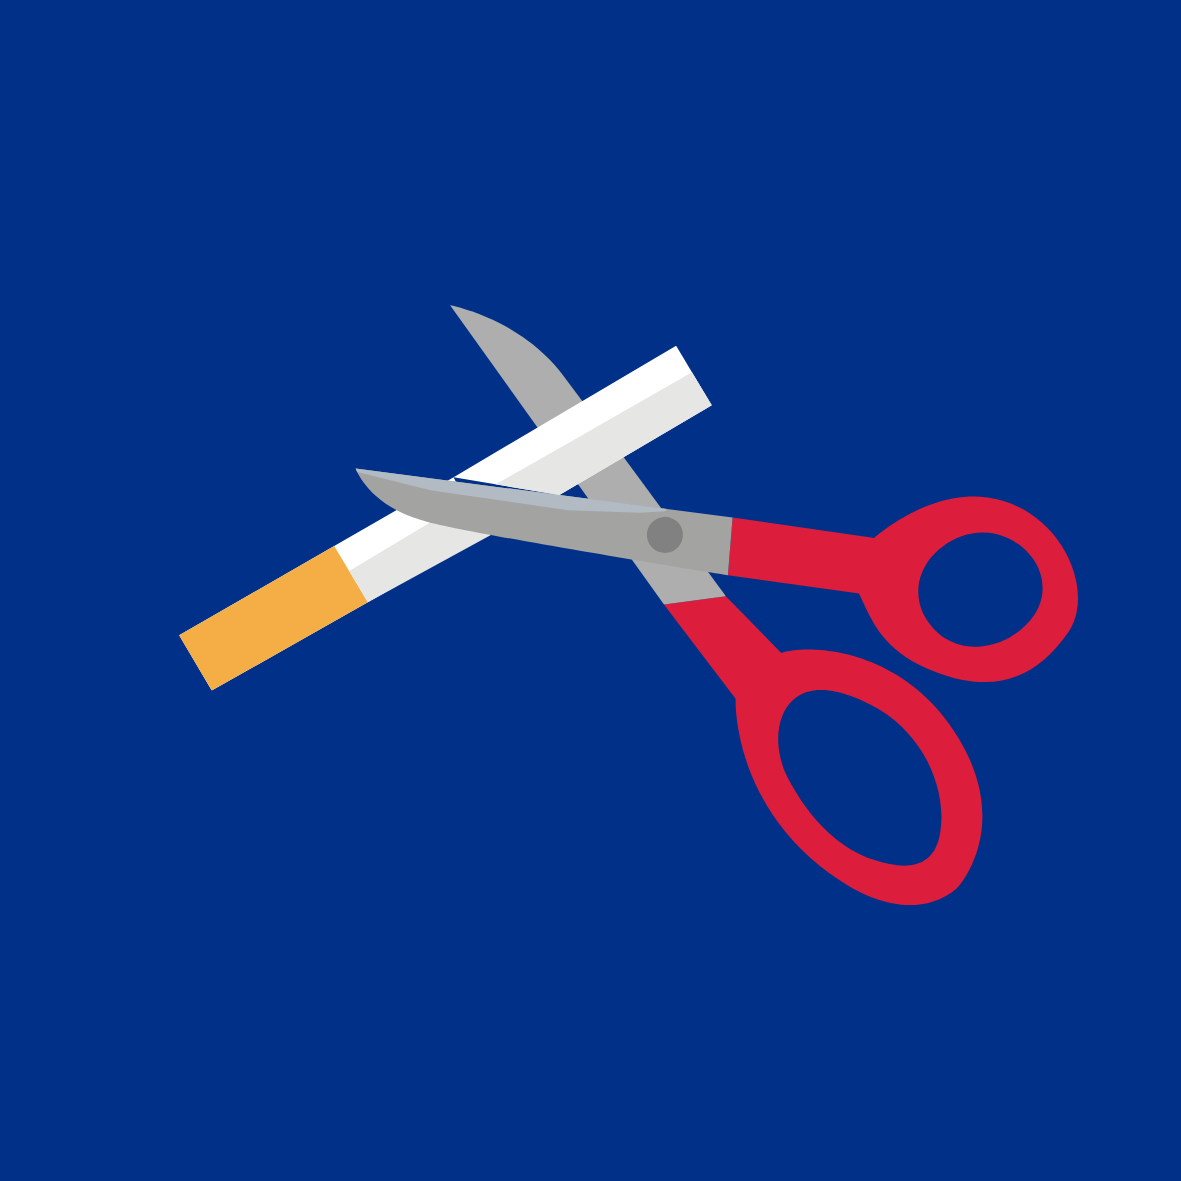 Scissors cutting a cigarette in half